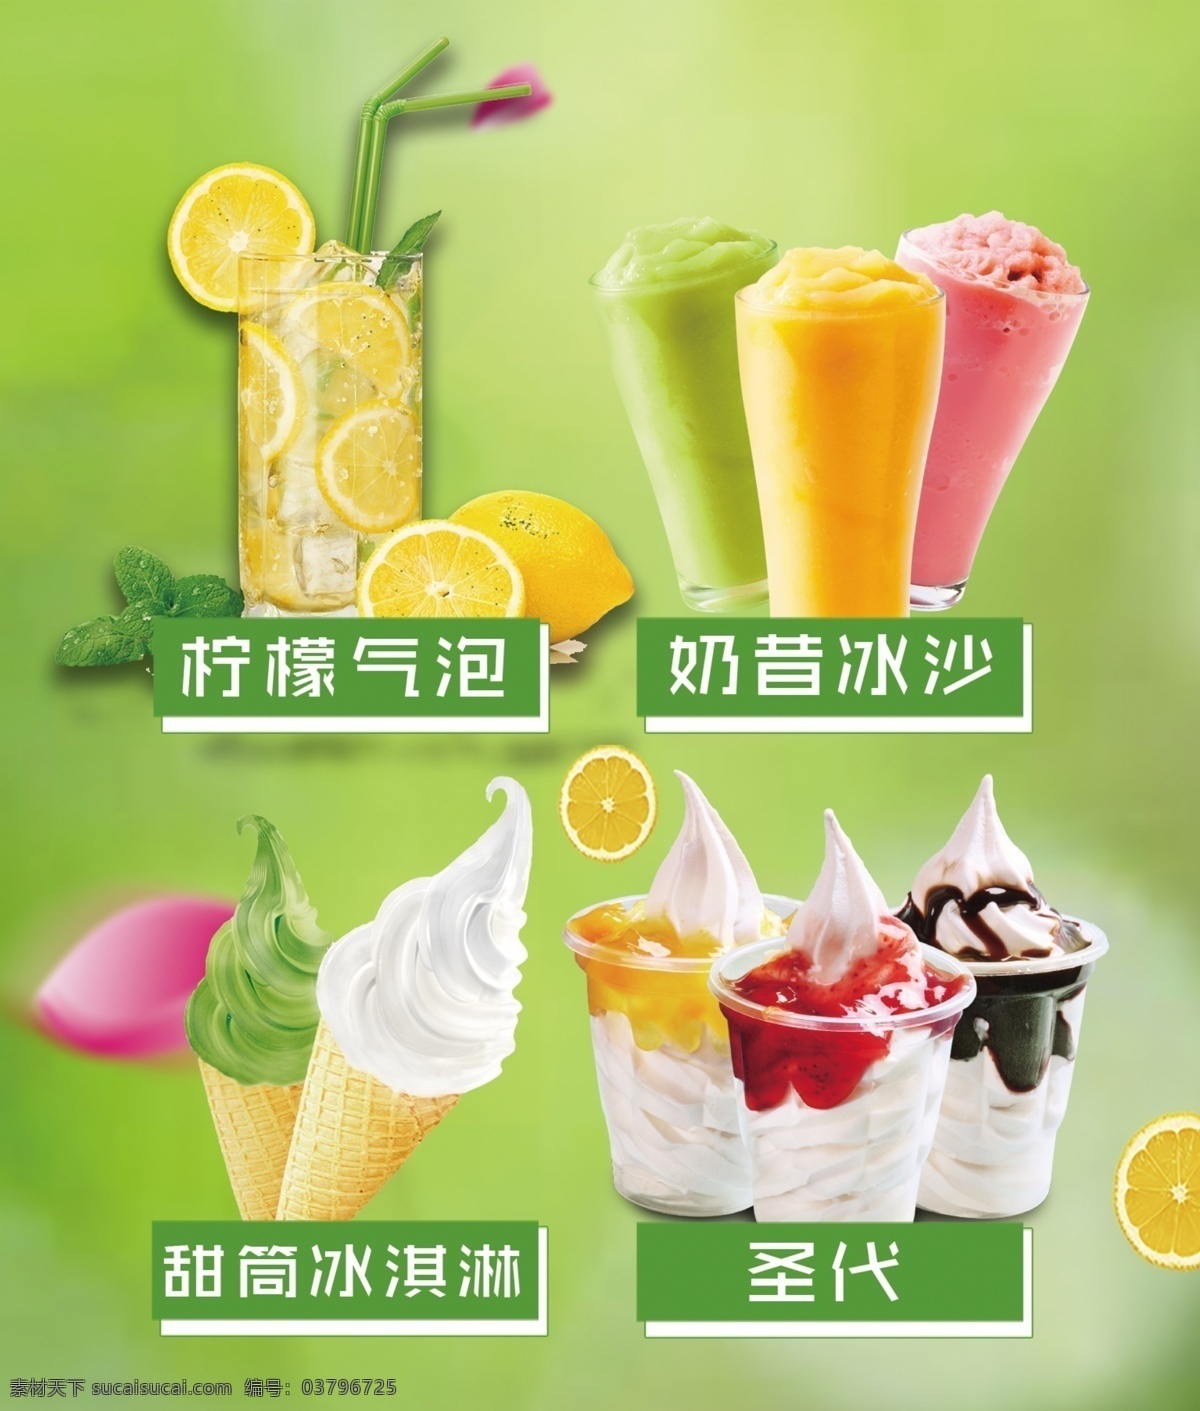 饮品价格表 冷饮 果汁 汉堡灯箱片 汉堡彩页 饮料海报 设计素材 分层